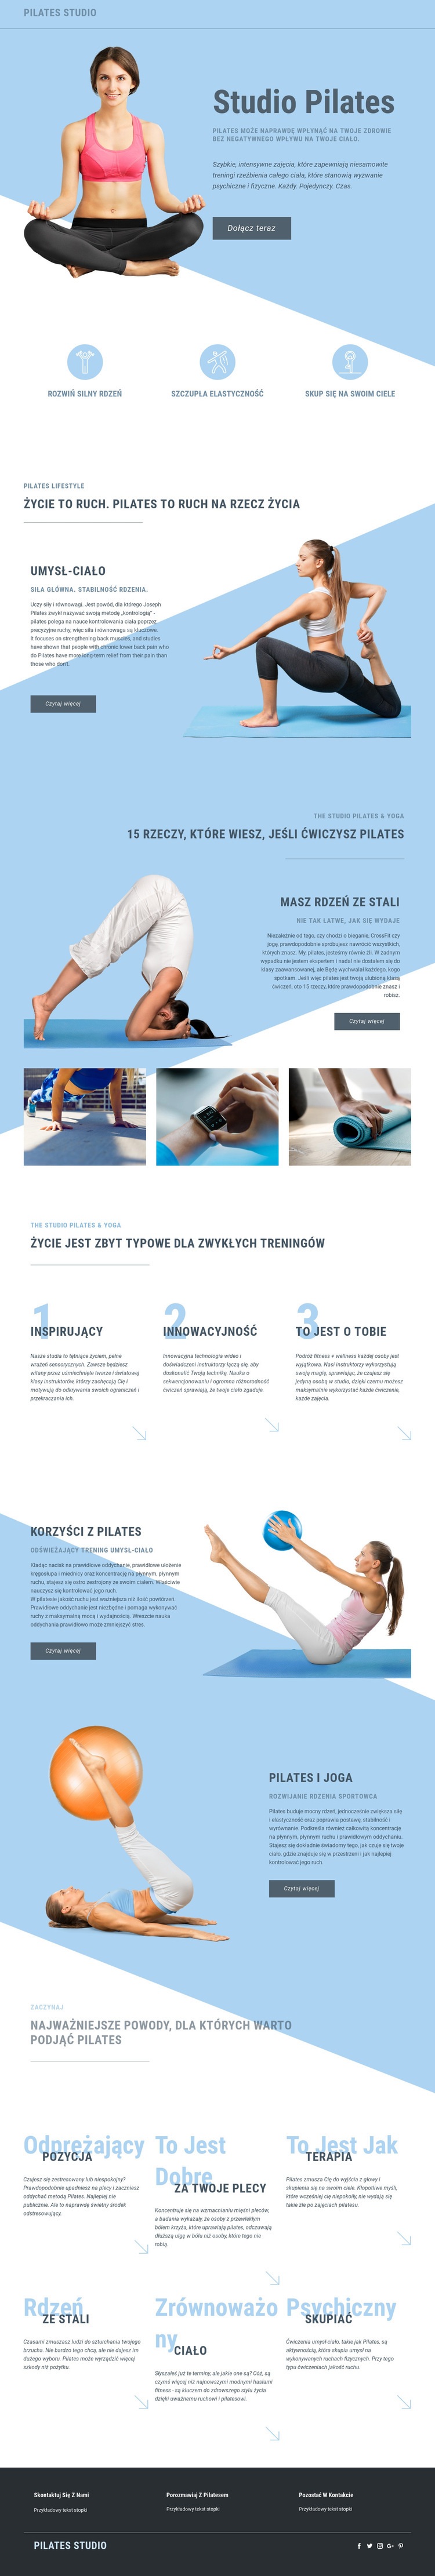 Studio pilates i sport Makieta strony internetowej